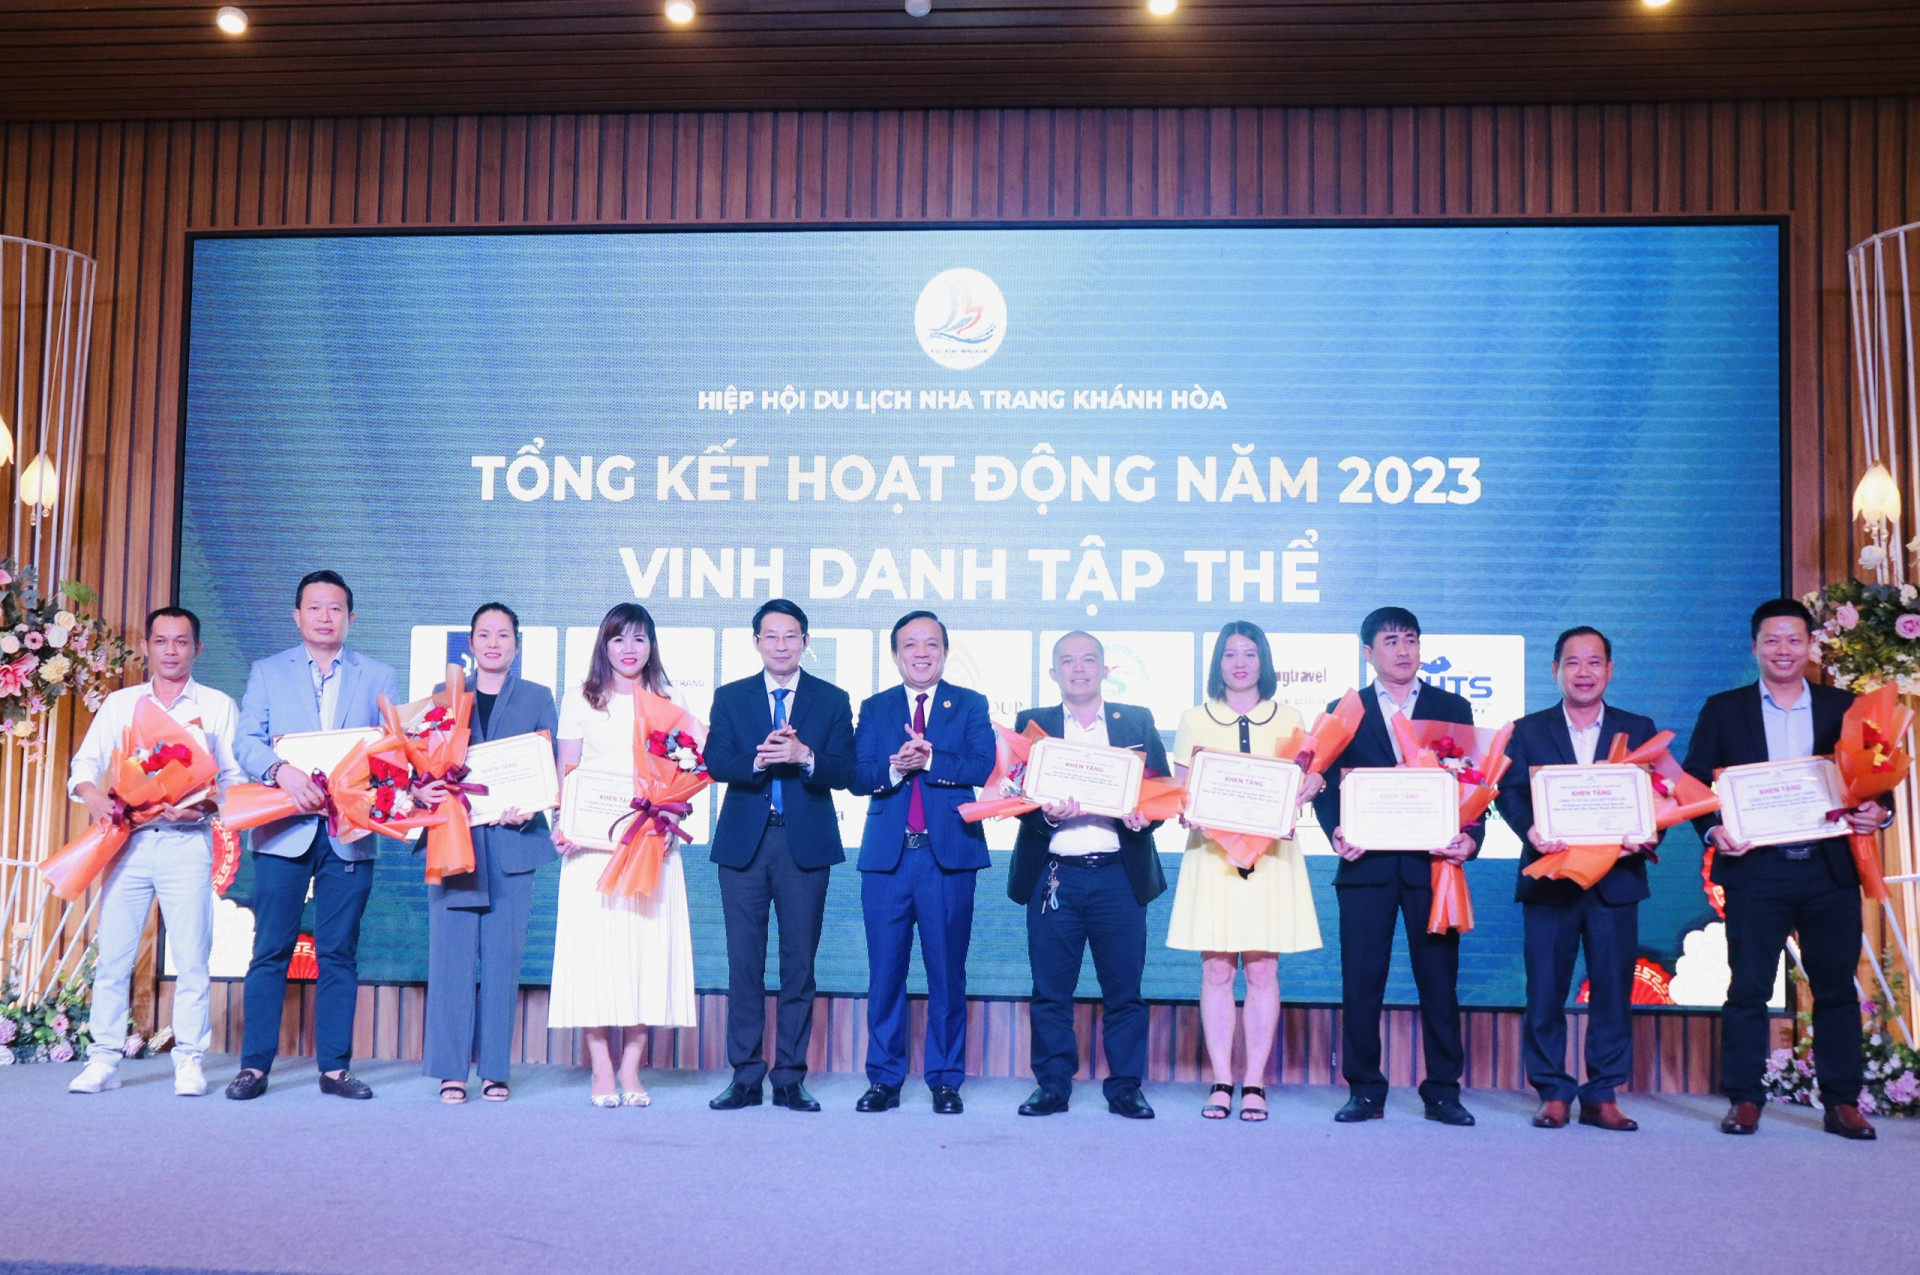 Phó Chủ tịch UBND tỉnh Đinh Văn Thiệu và Chủ tịch HHDL Nha Trang - Khánh Hòa Hoàng Văn Vinh trao giấy khen cho các tập thể có nhiều đóng góp cho hoạt động du lịch của tỉnh.